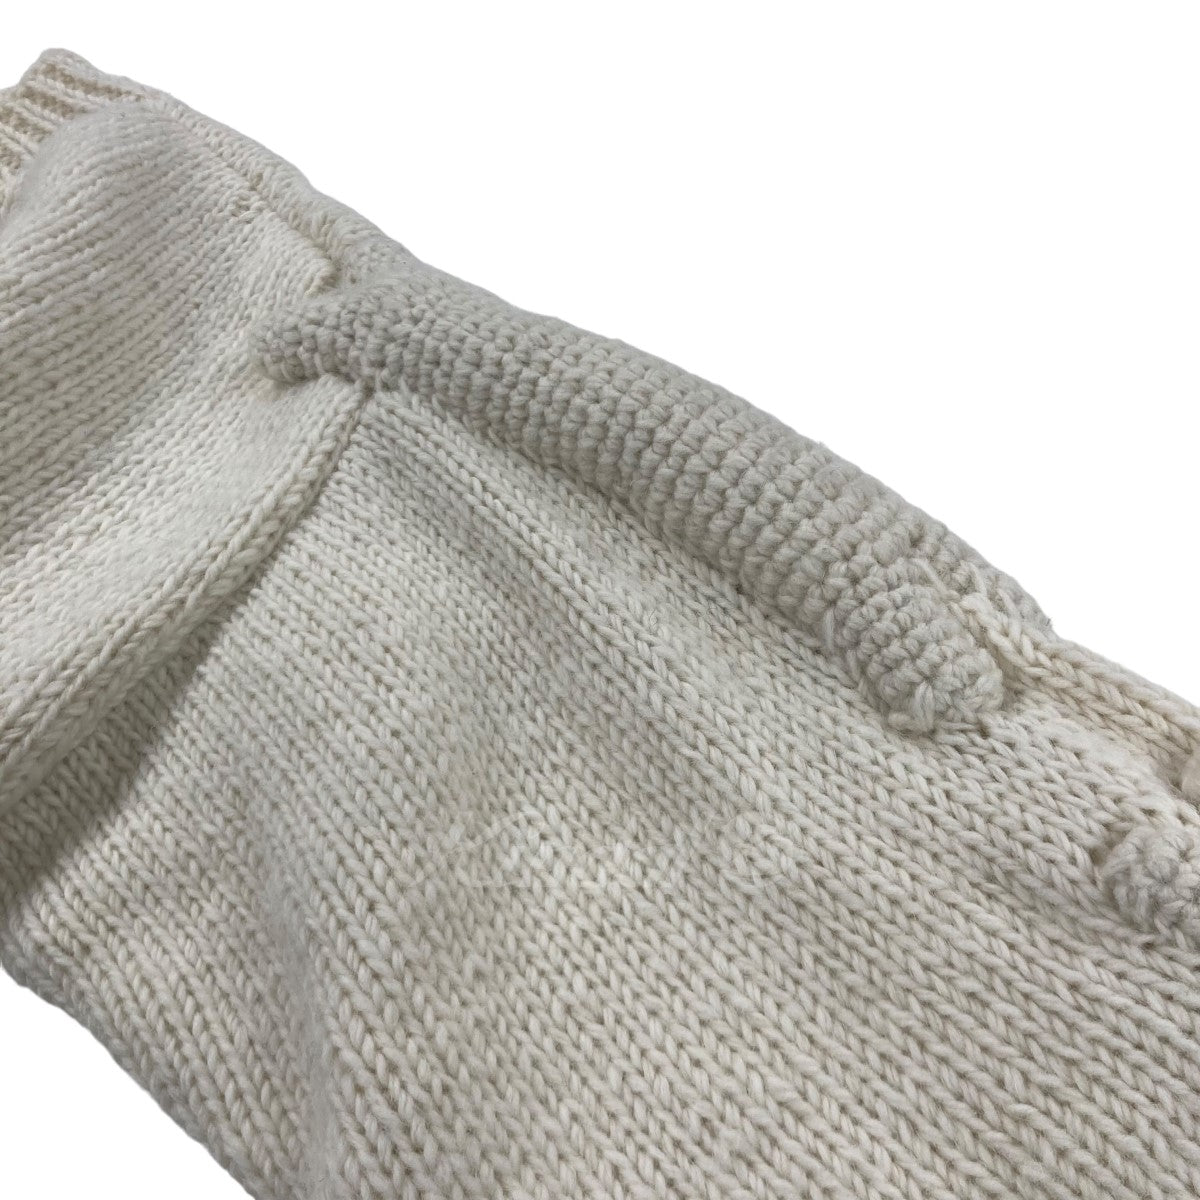 MacMahon Knitting Mills×Niche．(マクホーンニッティングミルズ×ニッチ) 「Crew Neck Knit 3D Arm  Bone」 ウールクルーネックニットセーター